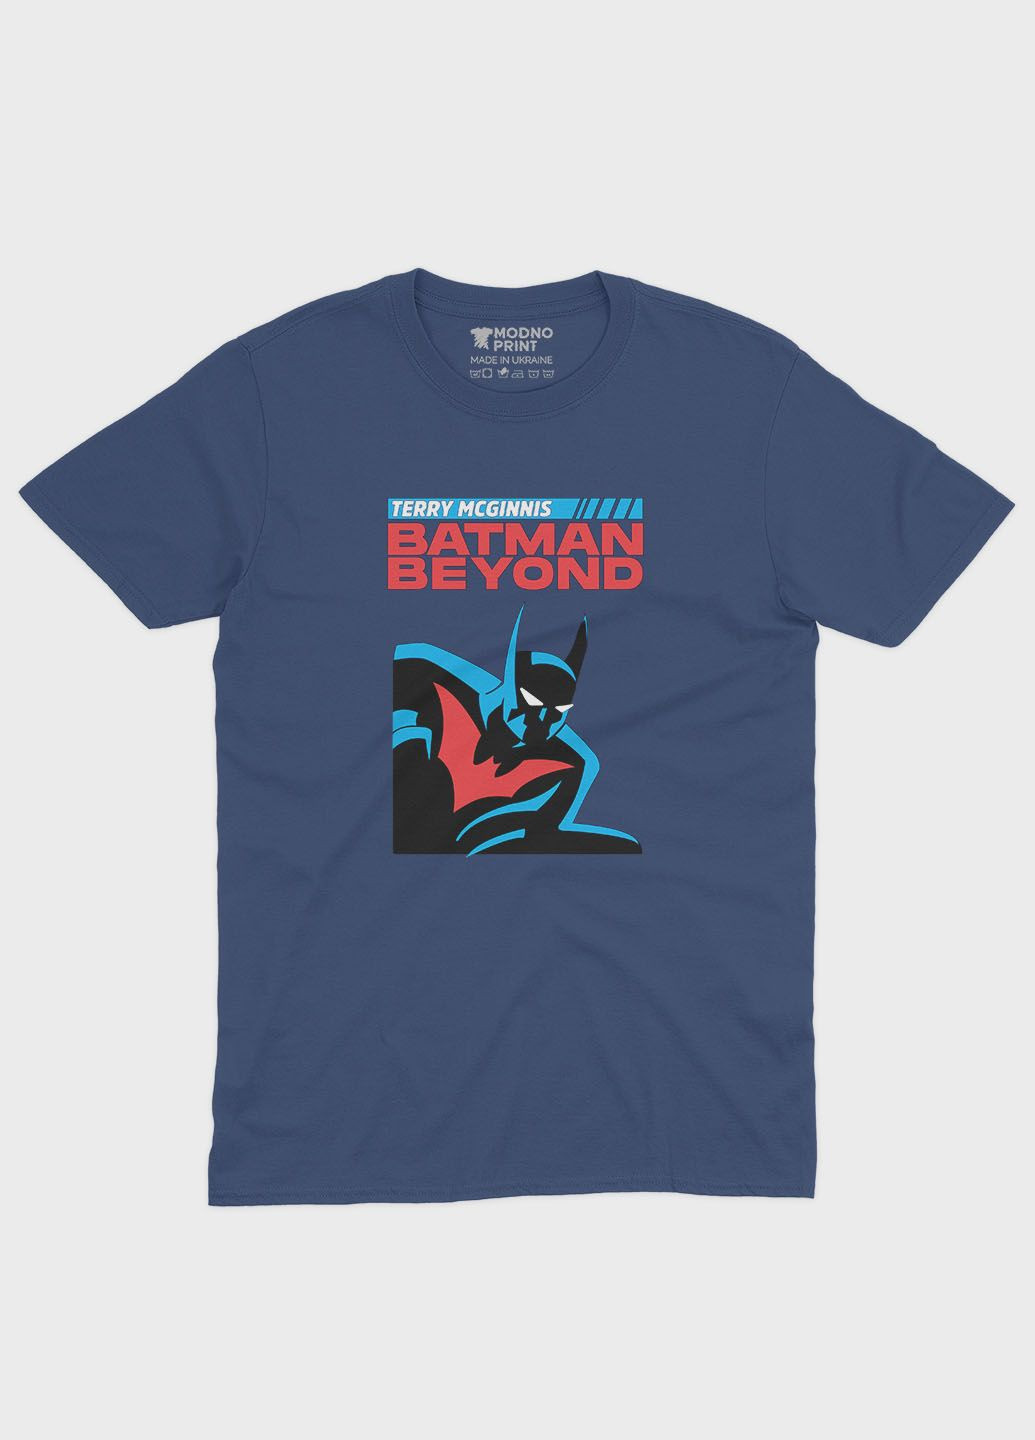 Темно-синя демісезонна футболка для хлопчика з принтом супергероя - бетмен (ts001-1-nav-006-003-017-b) Modno